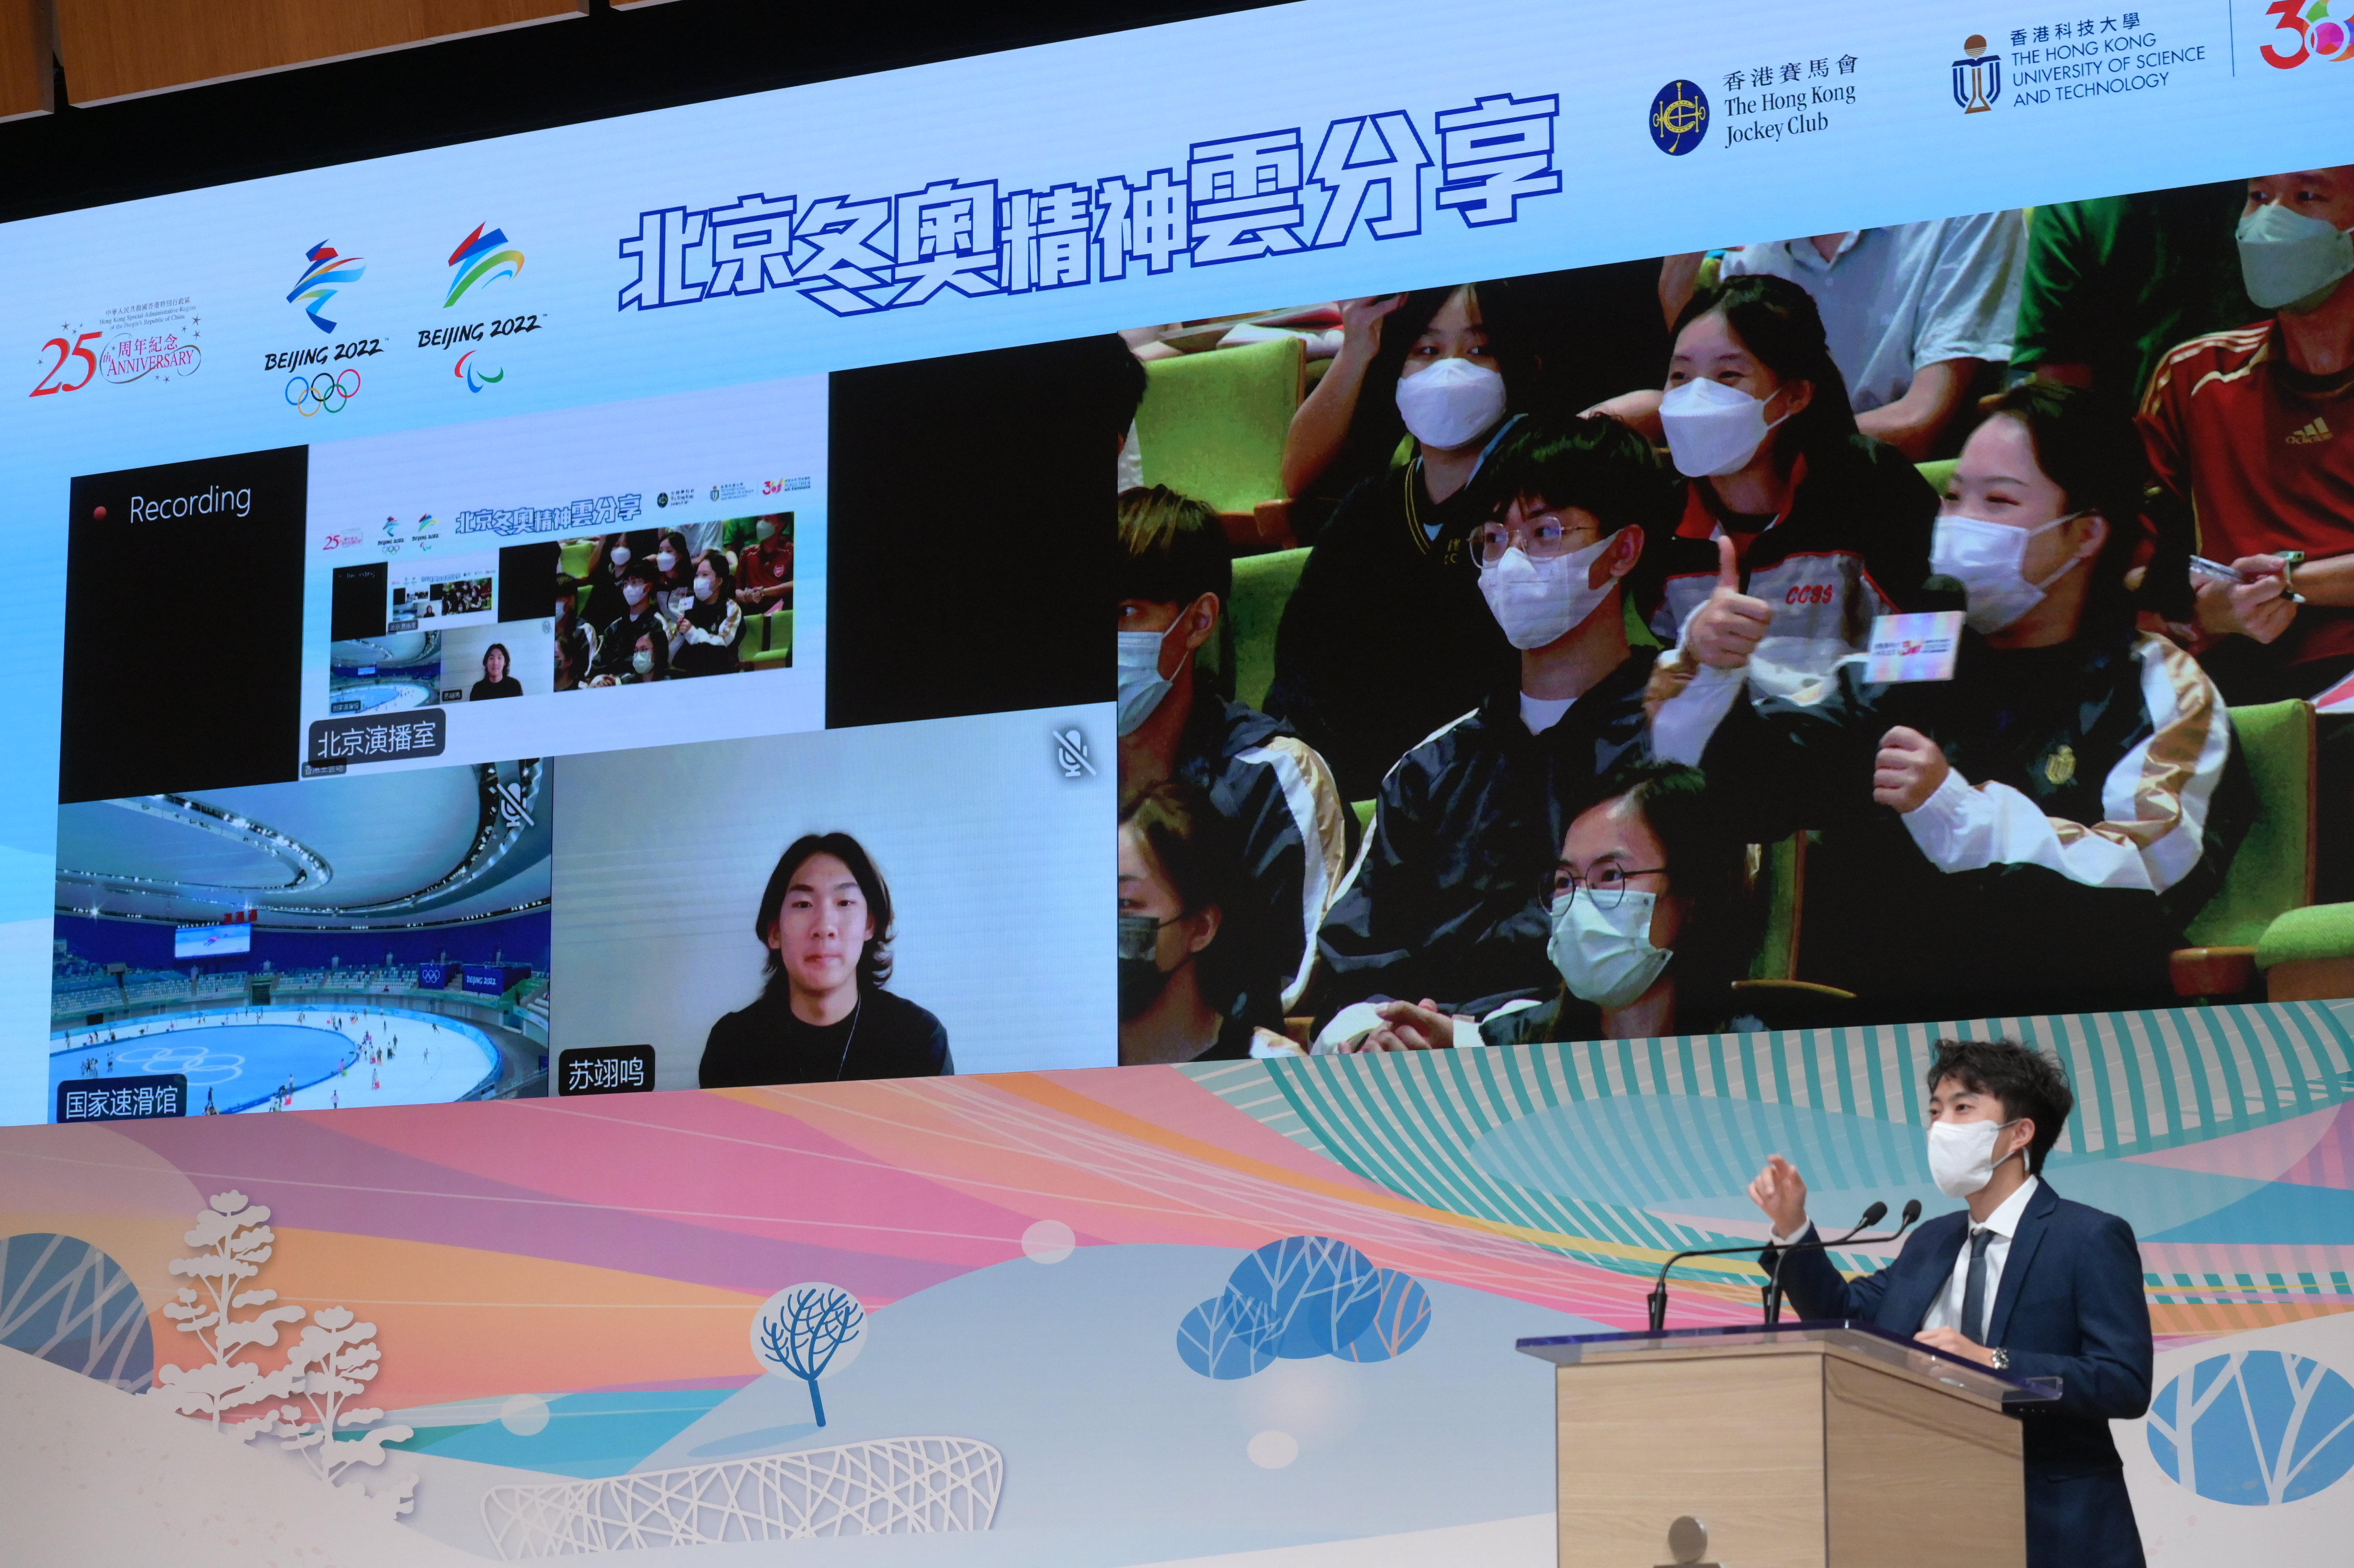 逾400名观众与七位参加了北京 2022 年冬季奥运会的国家和中国香港队选手、工作人员及义工分享和交流